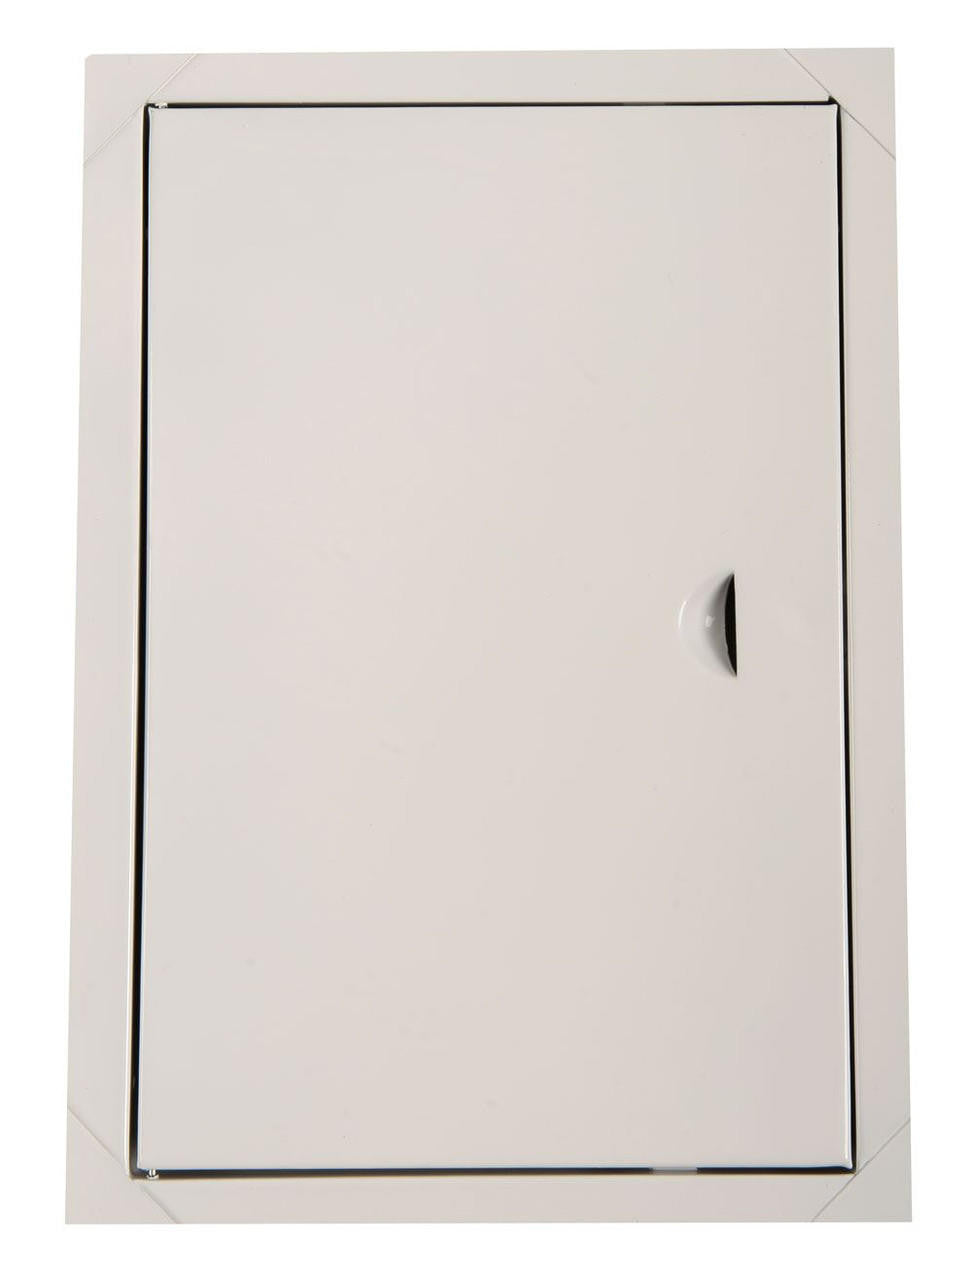 Airroxy Metal White Access Panels Inspection Hatch Access Doors Door Panel 